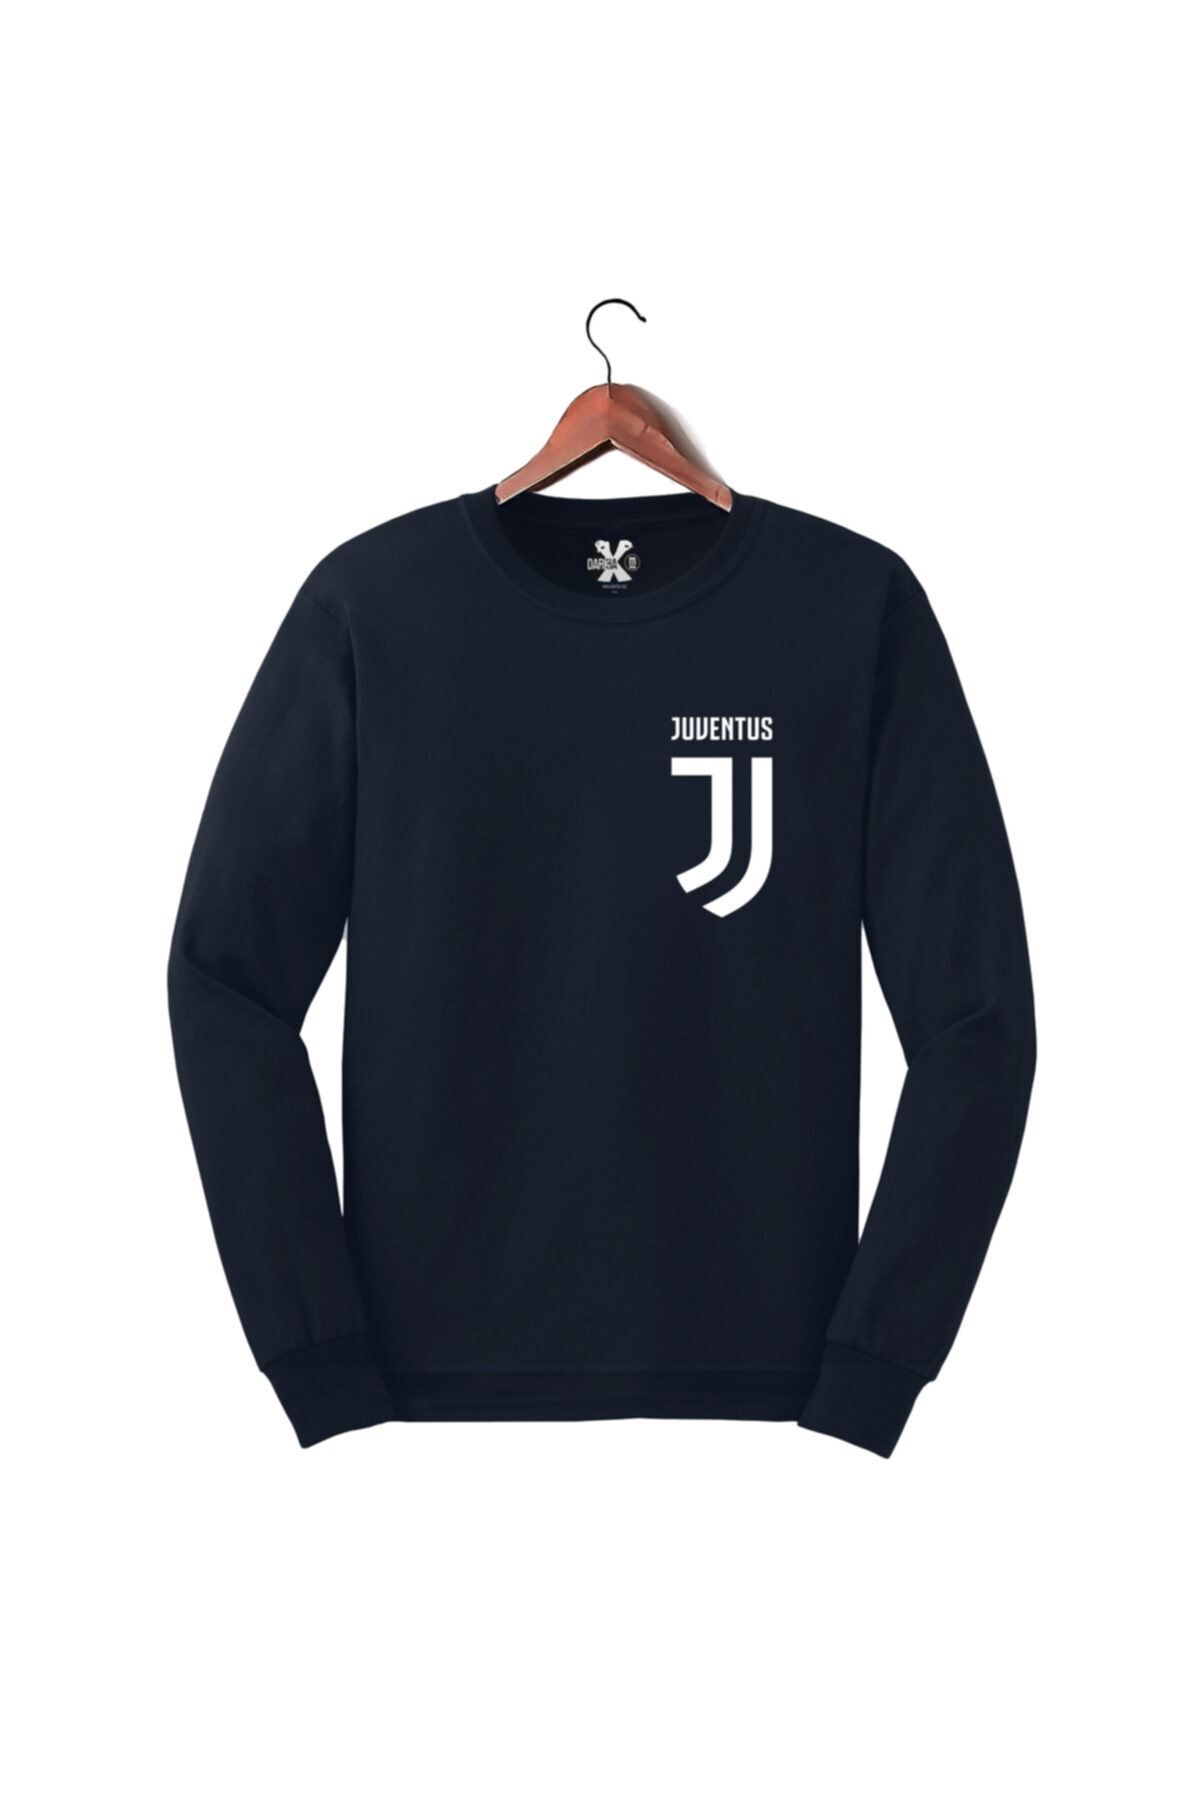 Darkia Juventus Logo Göğüs Baskılı Futbol Sweat Tasarım Sweatshirt